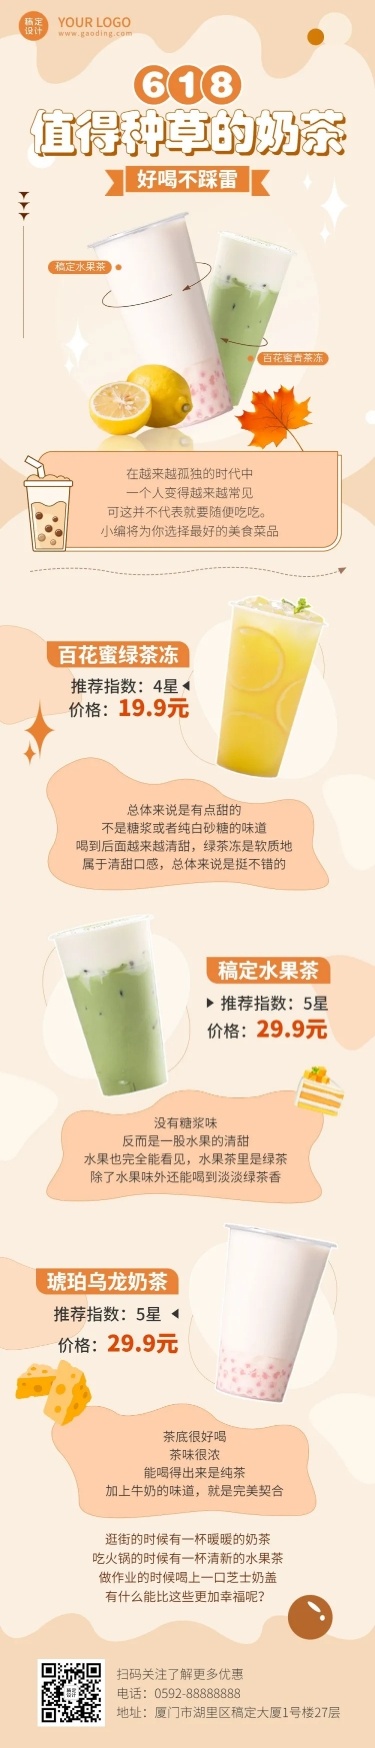 餐饮618奶茶饮品营销文章长图